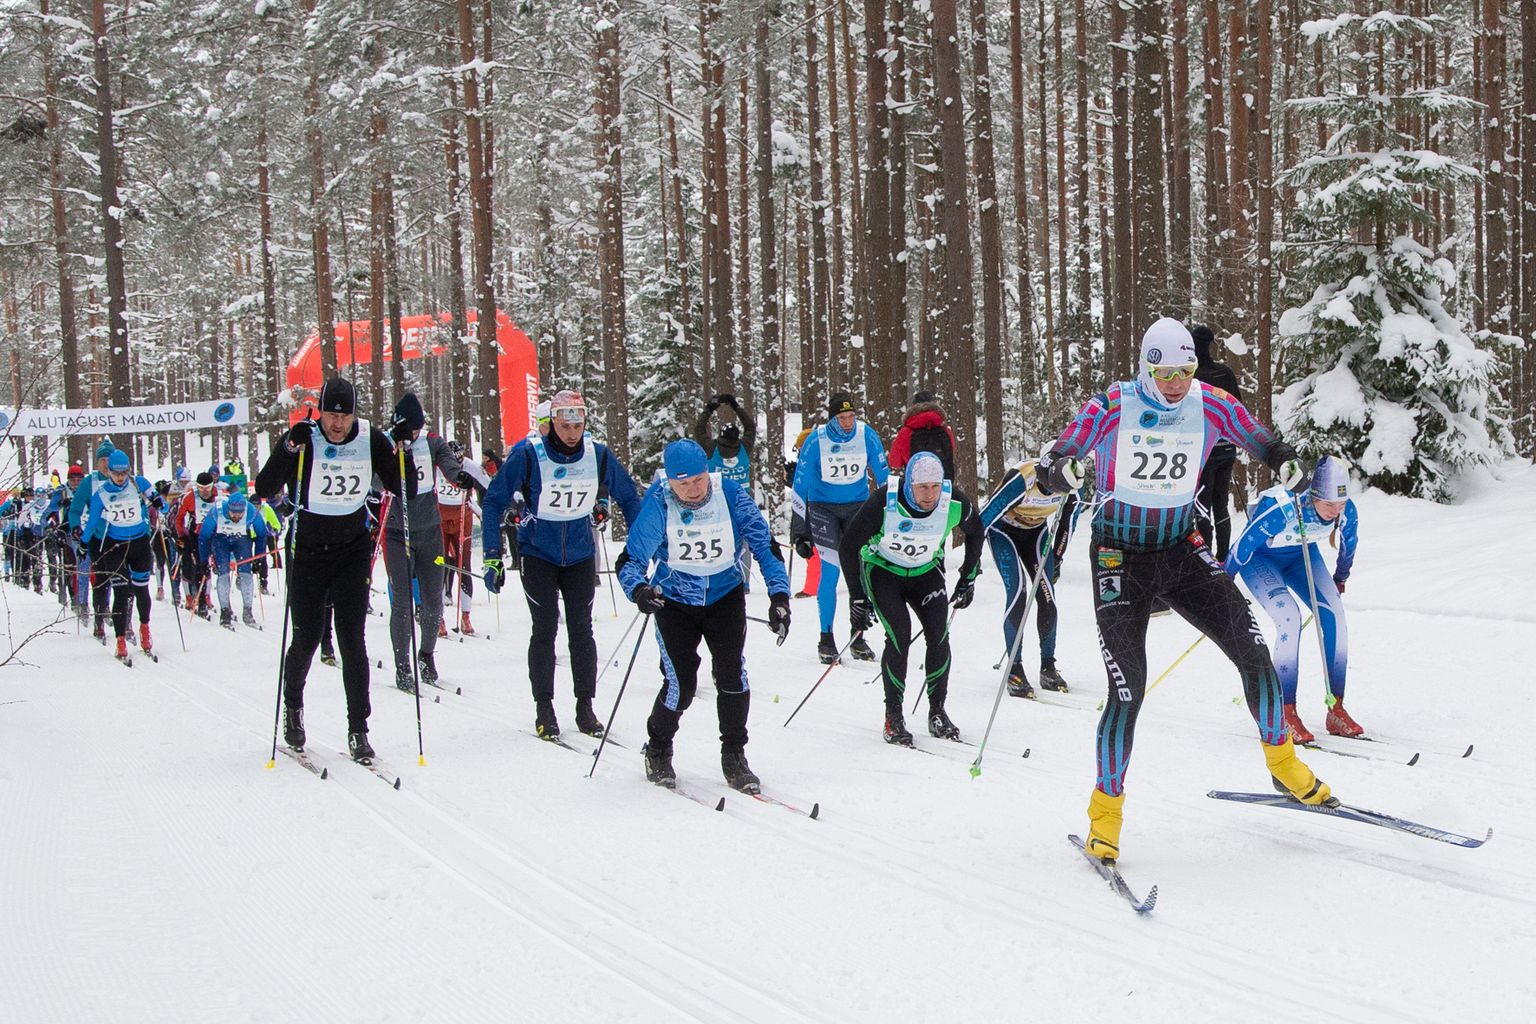 Этапы серии лыжных вечеров - хорошая возможность для любителей набрать форму к проходящему 12 февраля Алутагузескому марафону.